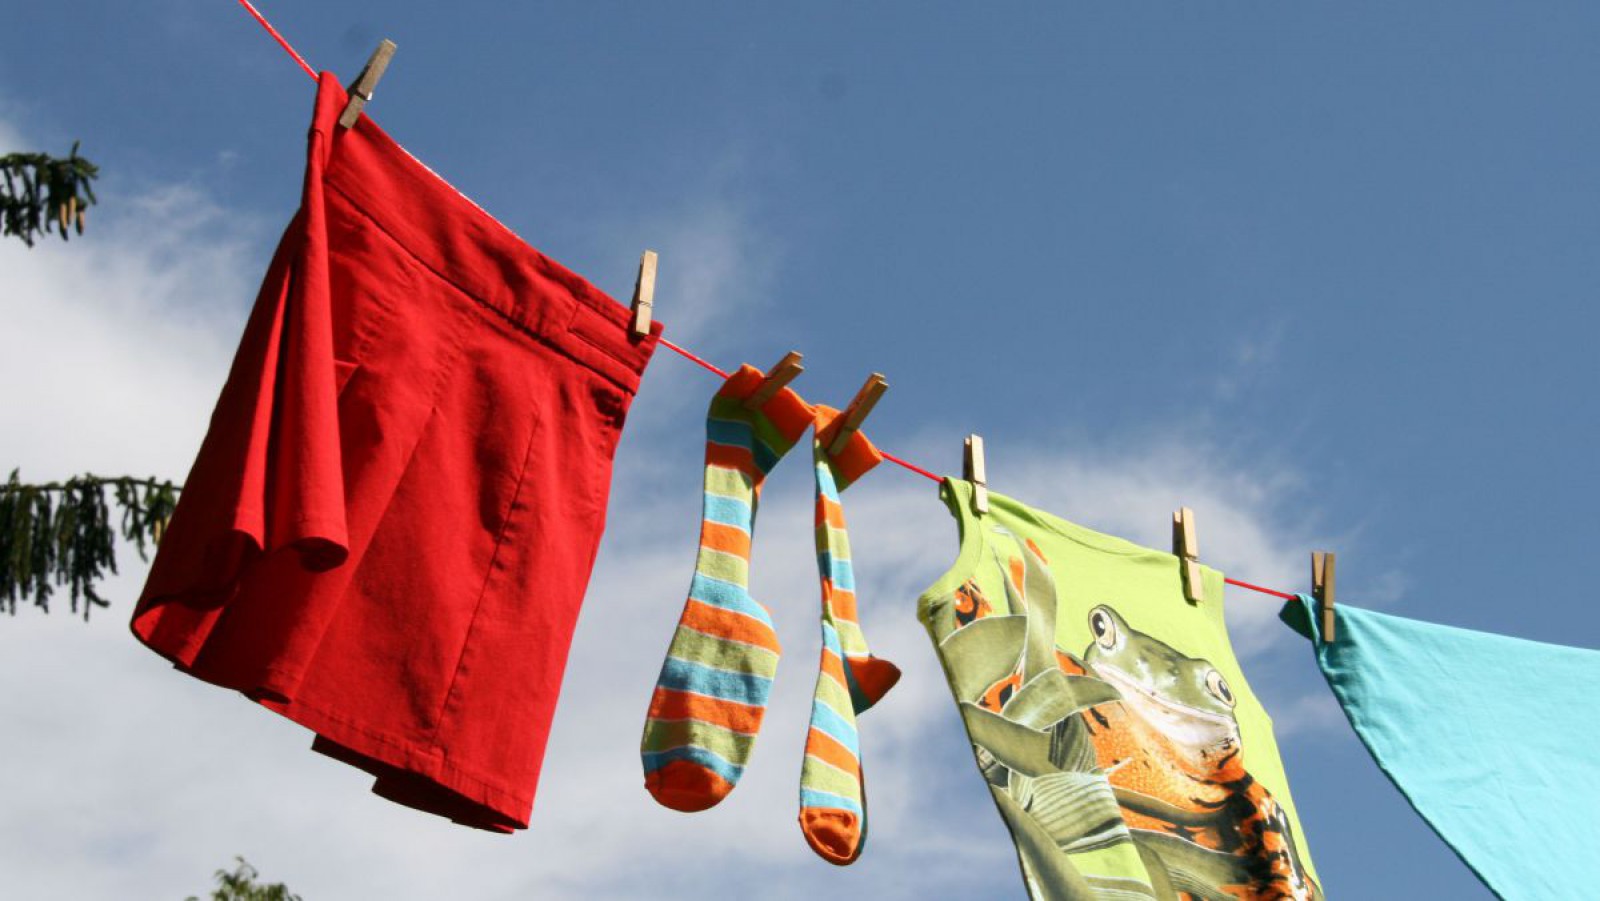 Verschiedene Kleidungsstücke auf einer Wäscheleine im Freien.